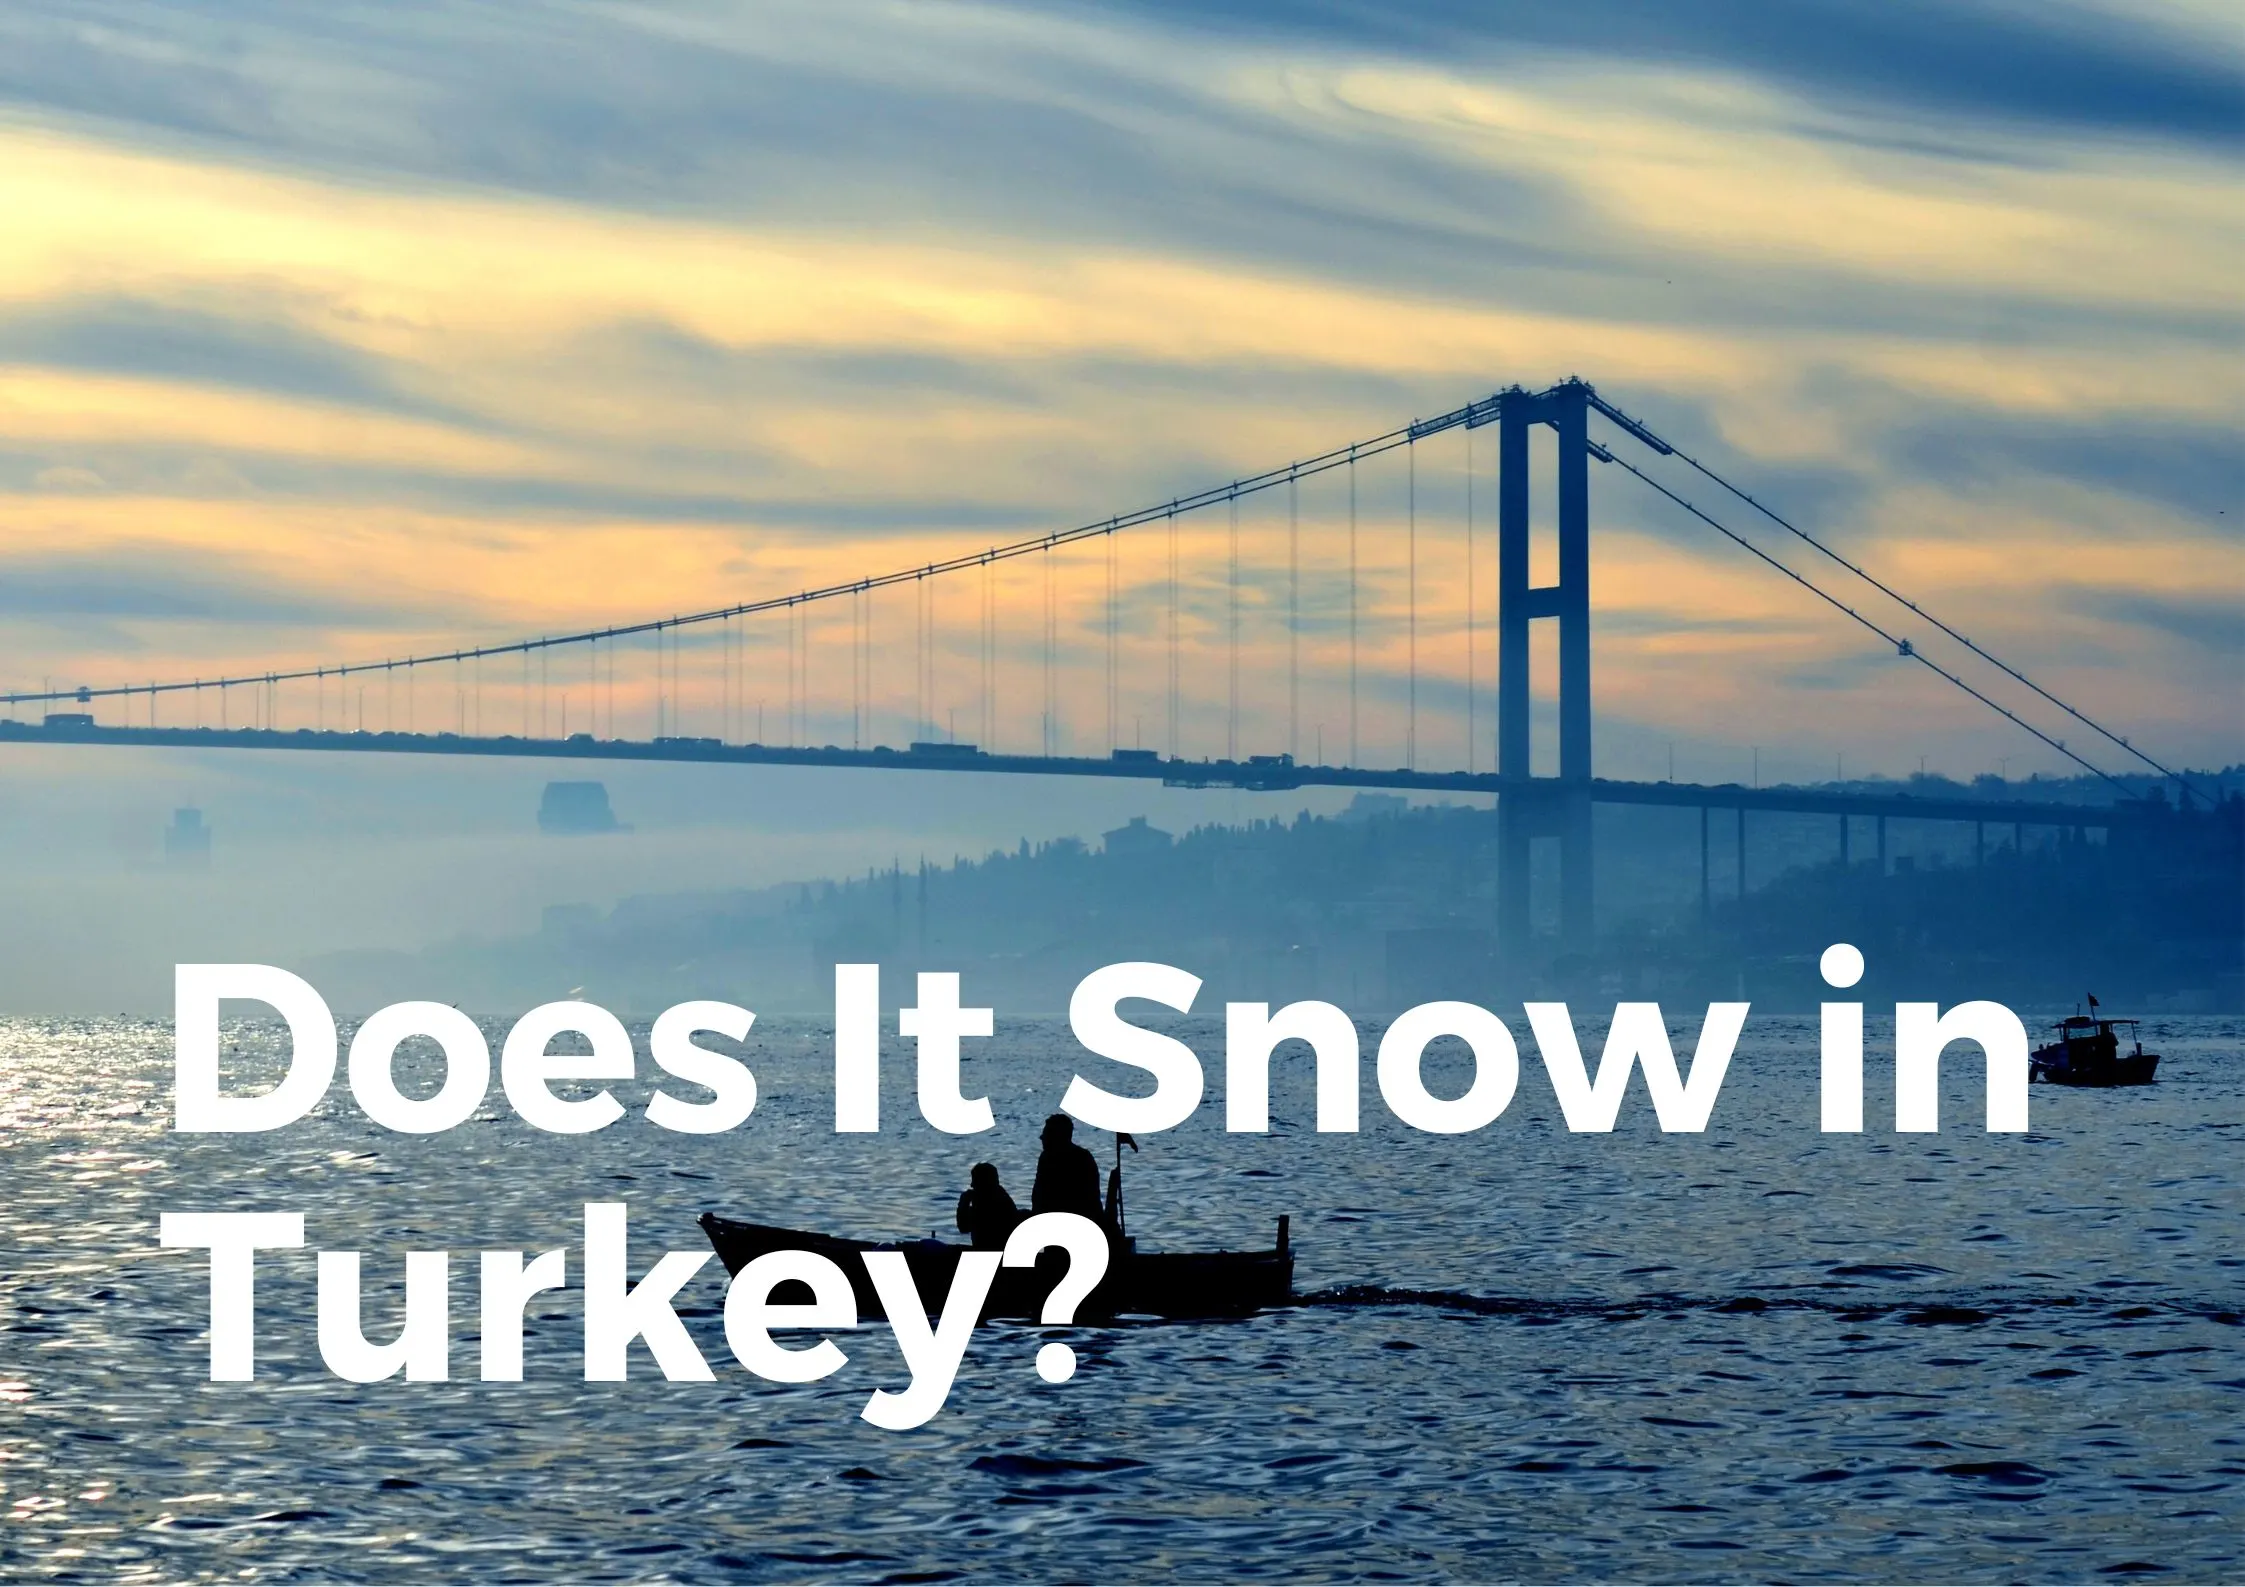 Does it snow in Turkey